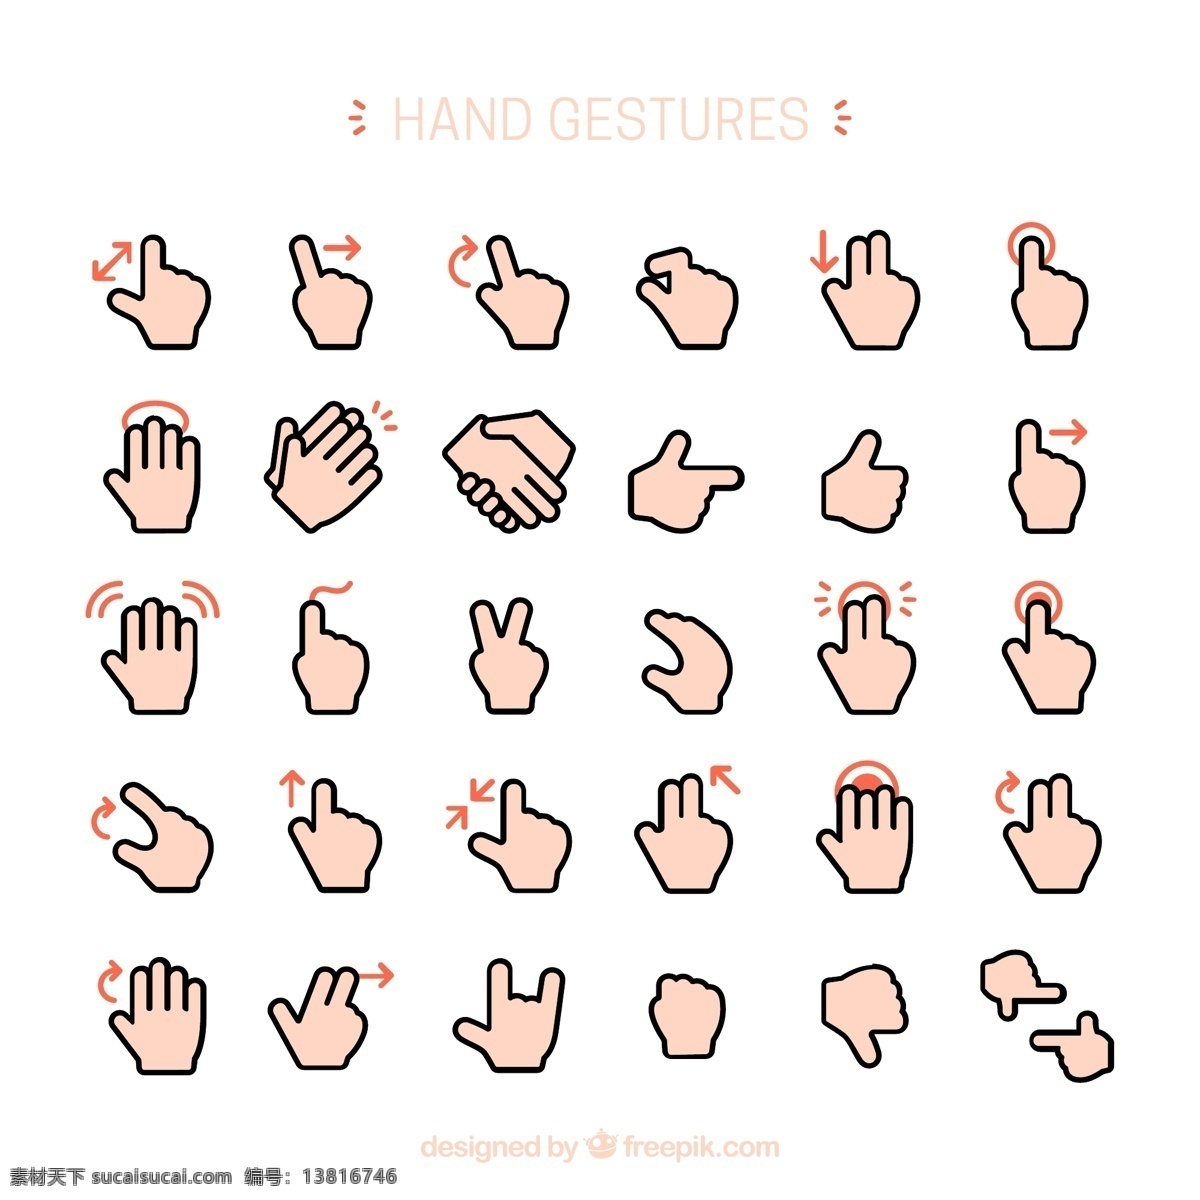 手部动作手势 手部动作 手势 手 矢量手形状 图标 矢量趣多多 标志图标 其他图标